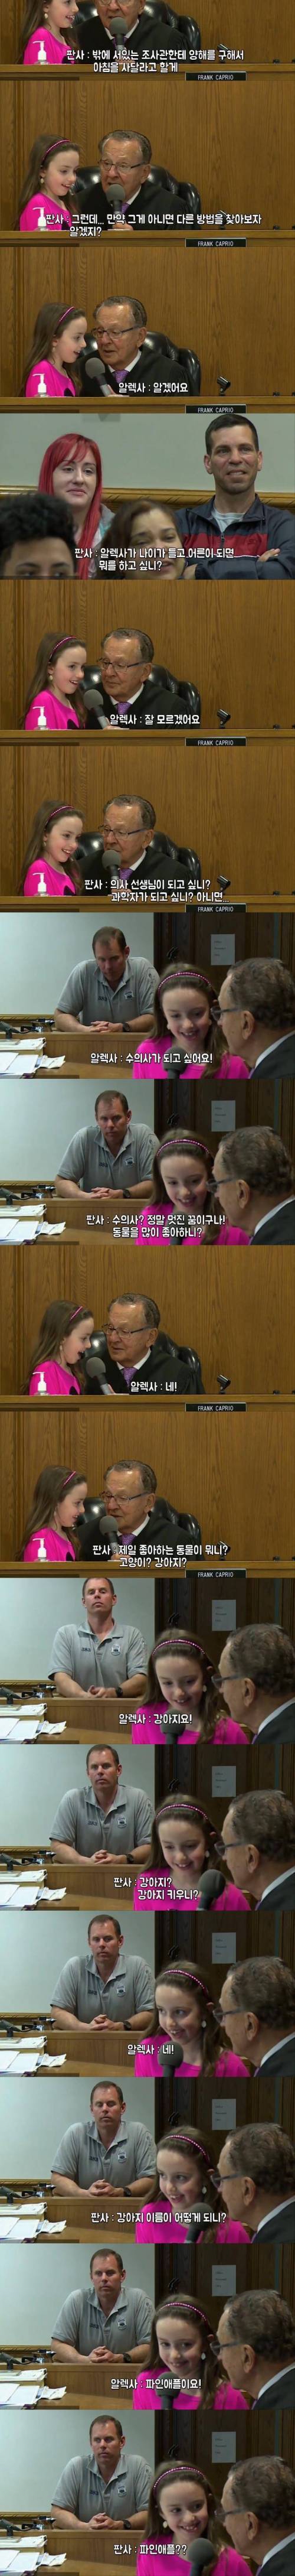 [스압] 법정에서 엄마를 변호한 8살 딸아이.jpg